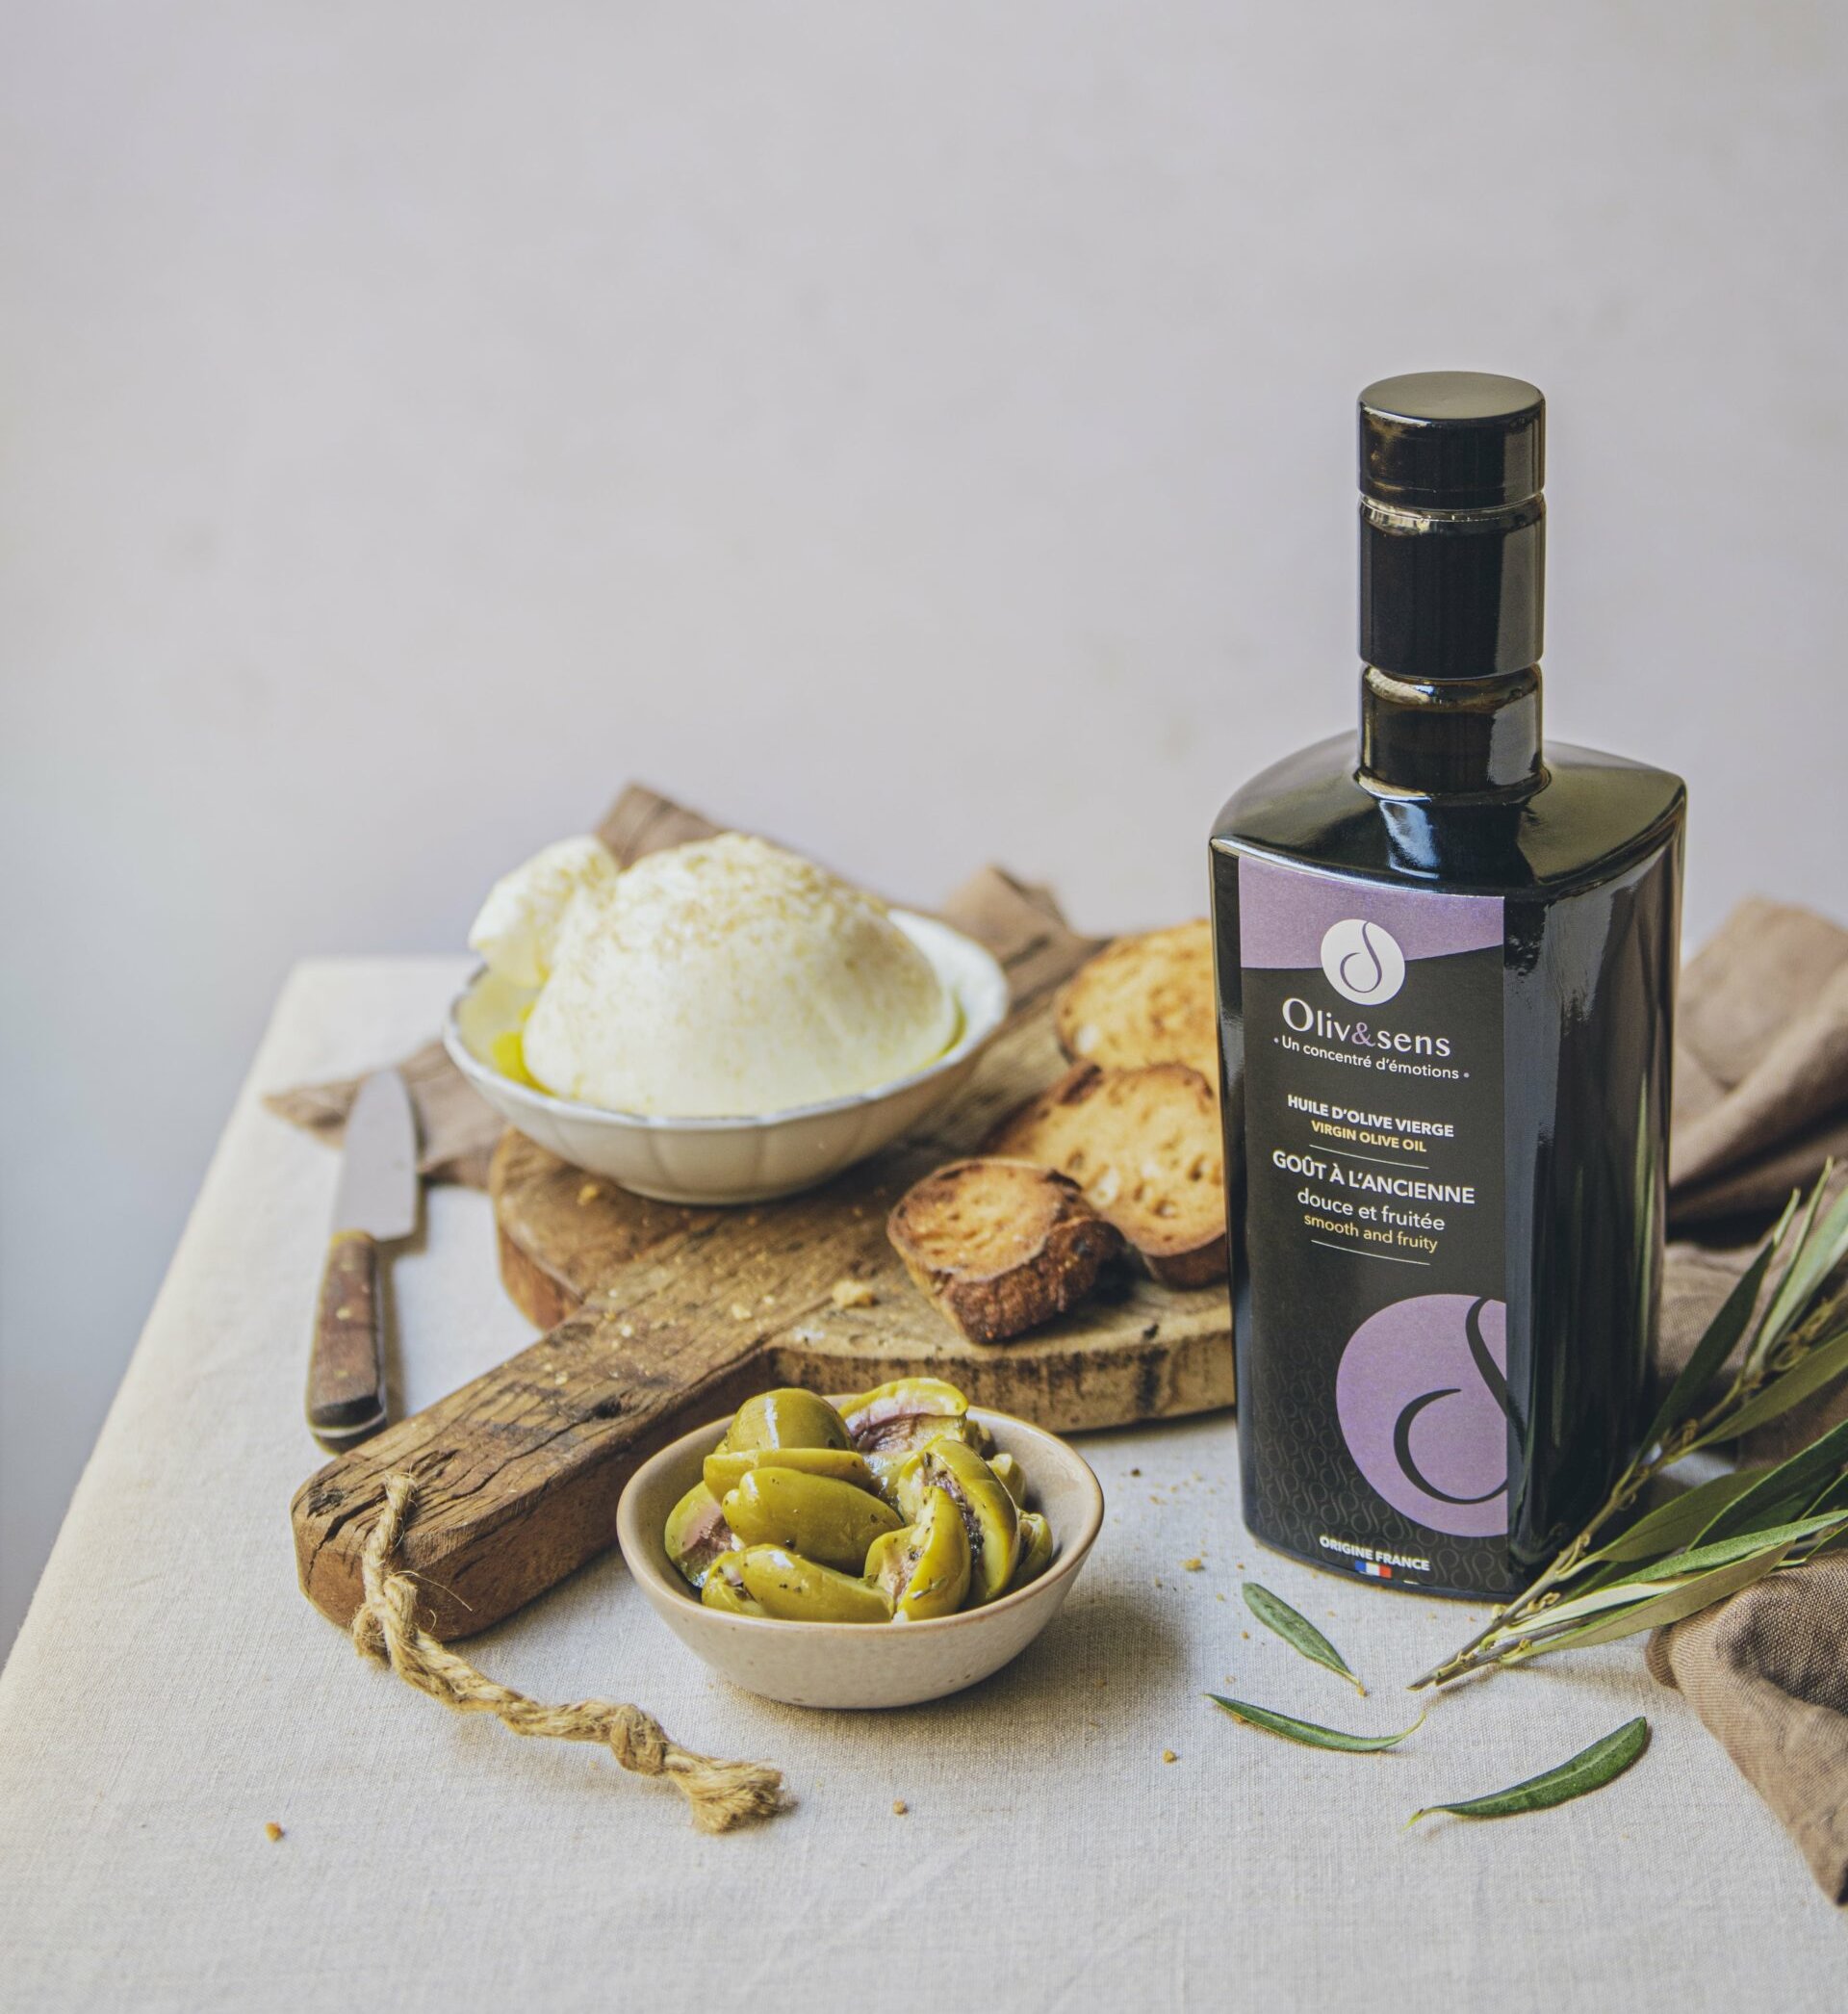 Olive et sens huile d'olive Olives maturées huile d'olive française huile d'olive artisanale huile d'olive des chefs